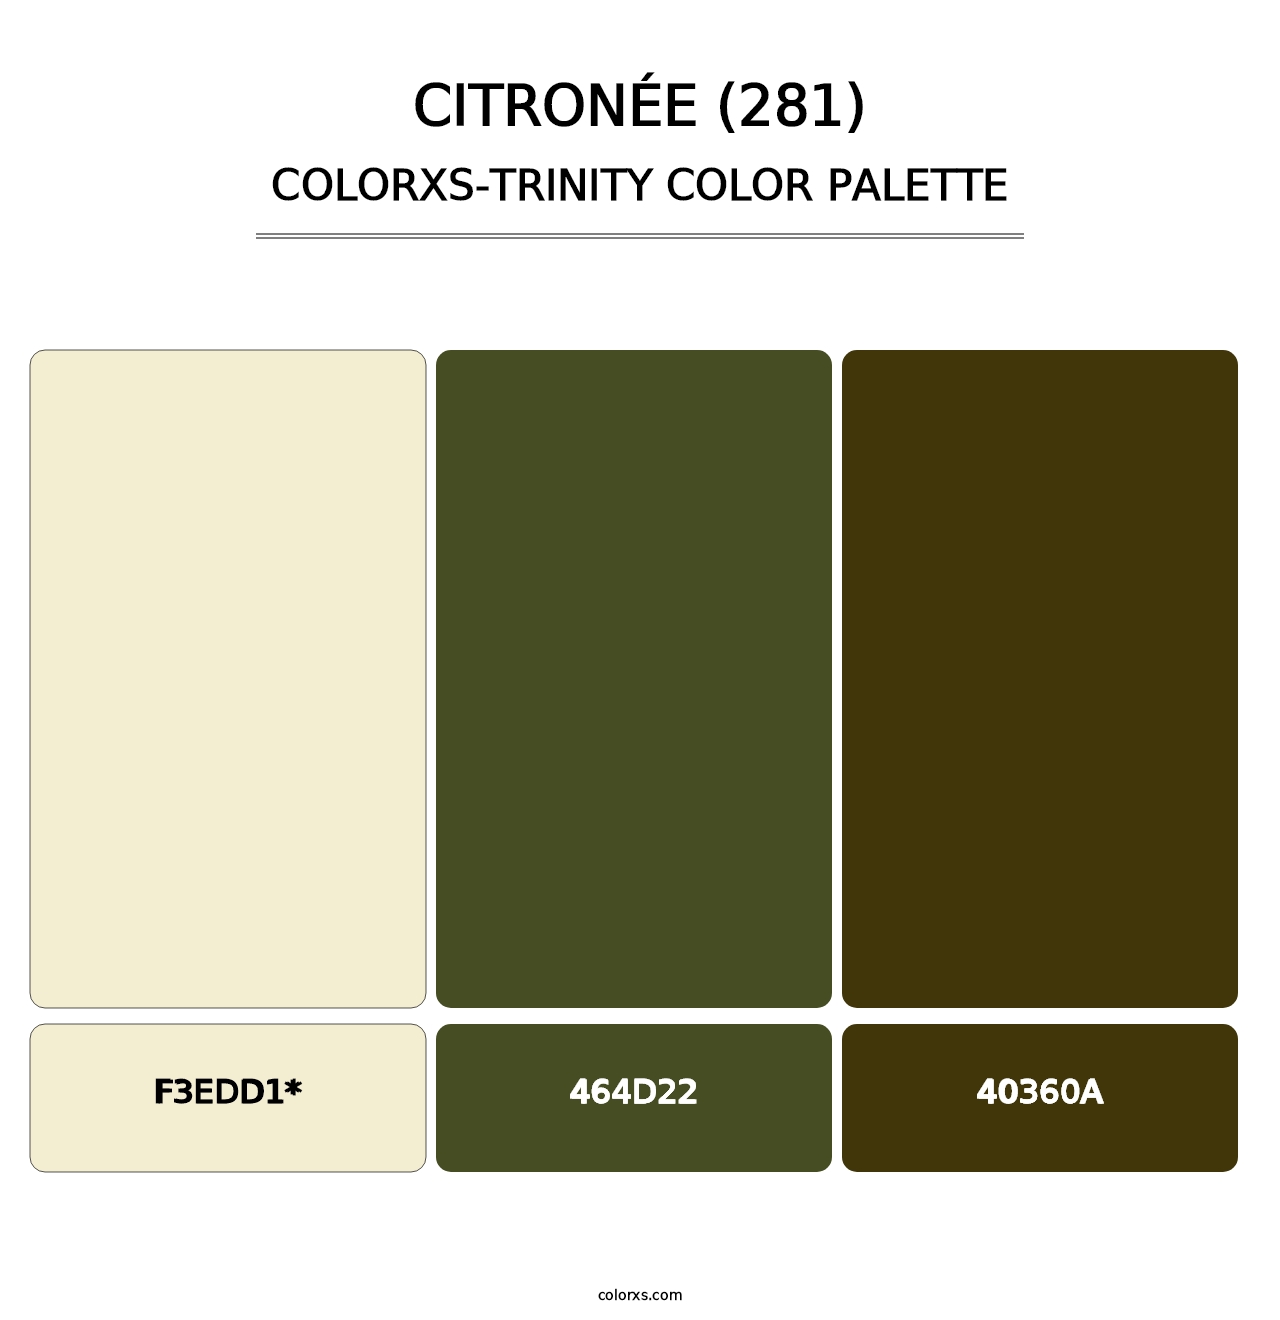 Citronée (281) - Colorxs Trinity Palette